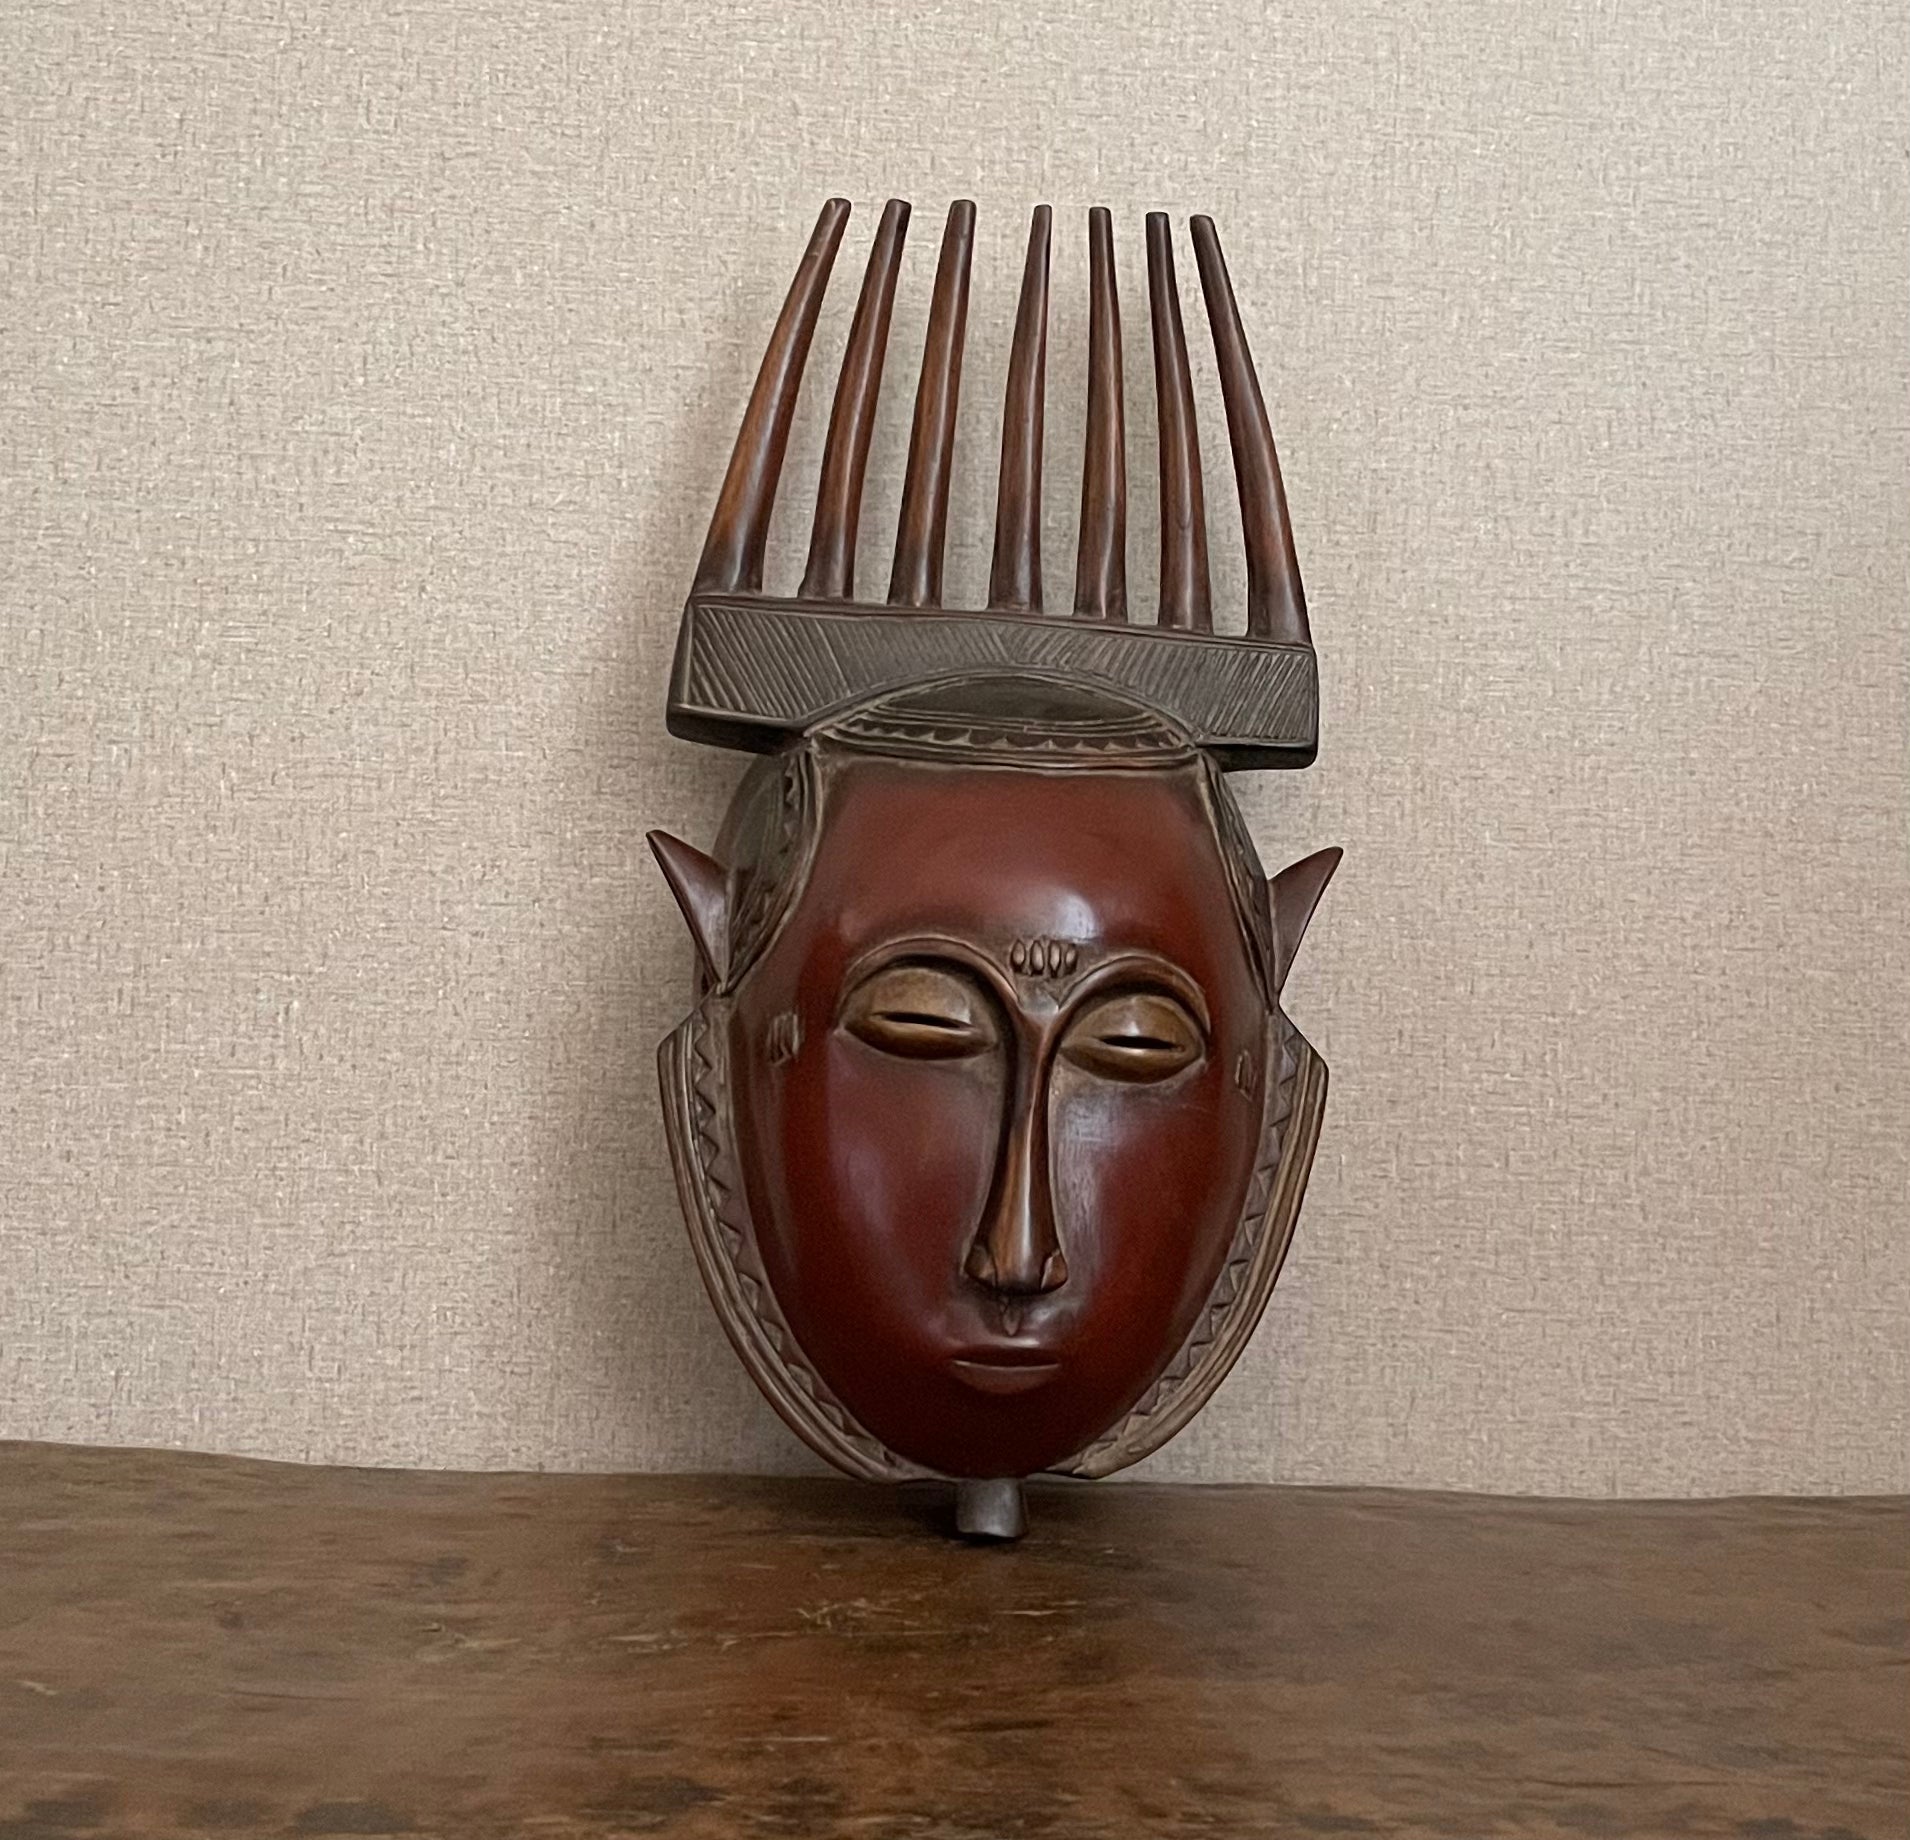 Handcrafted Art Masks - African Plural Art - Baule Masks - Vintage - Hand Carved Wooden,  Baule Comb Mask, African Vintage, Wall Decor Art